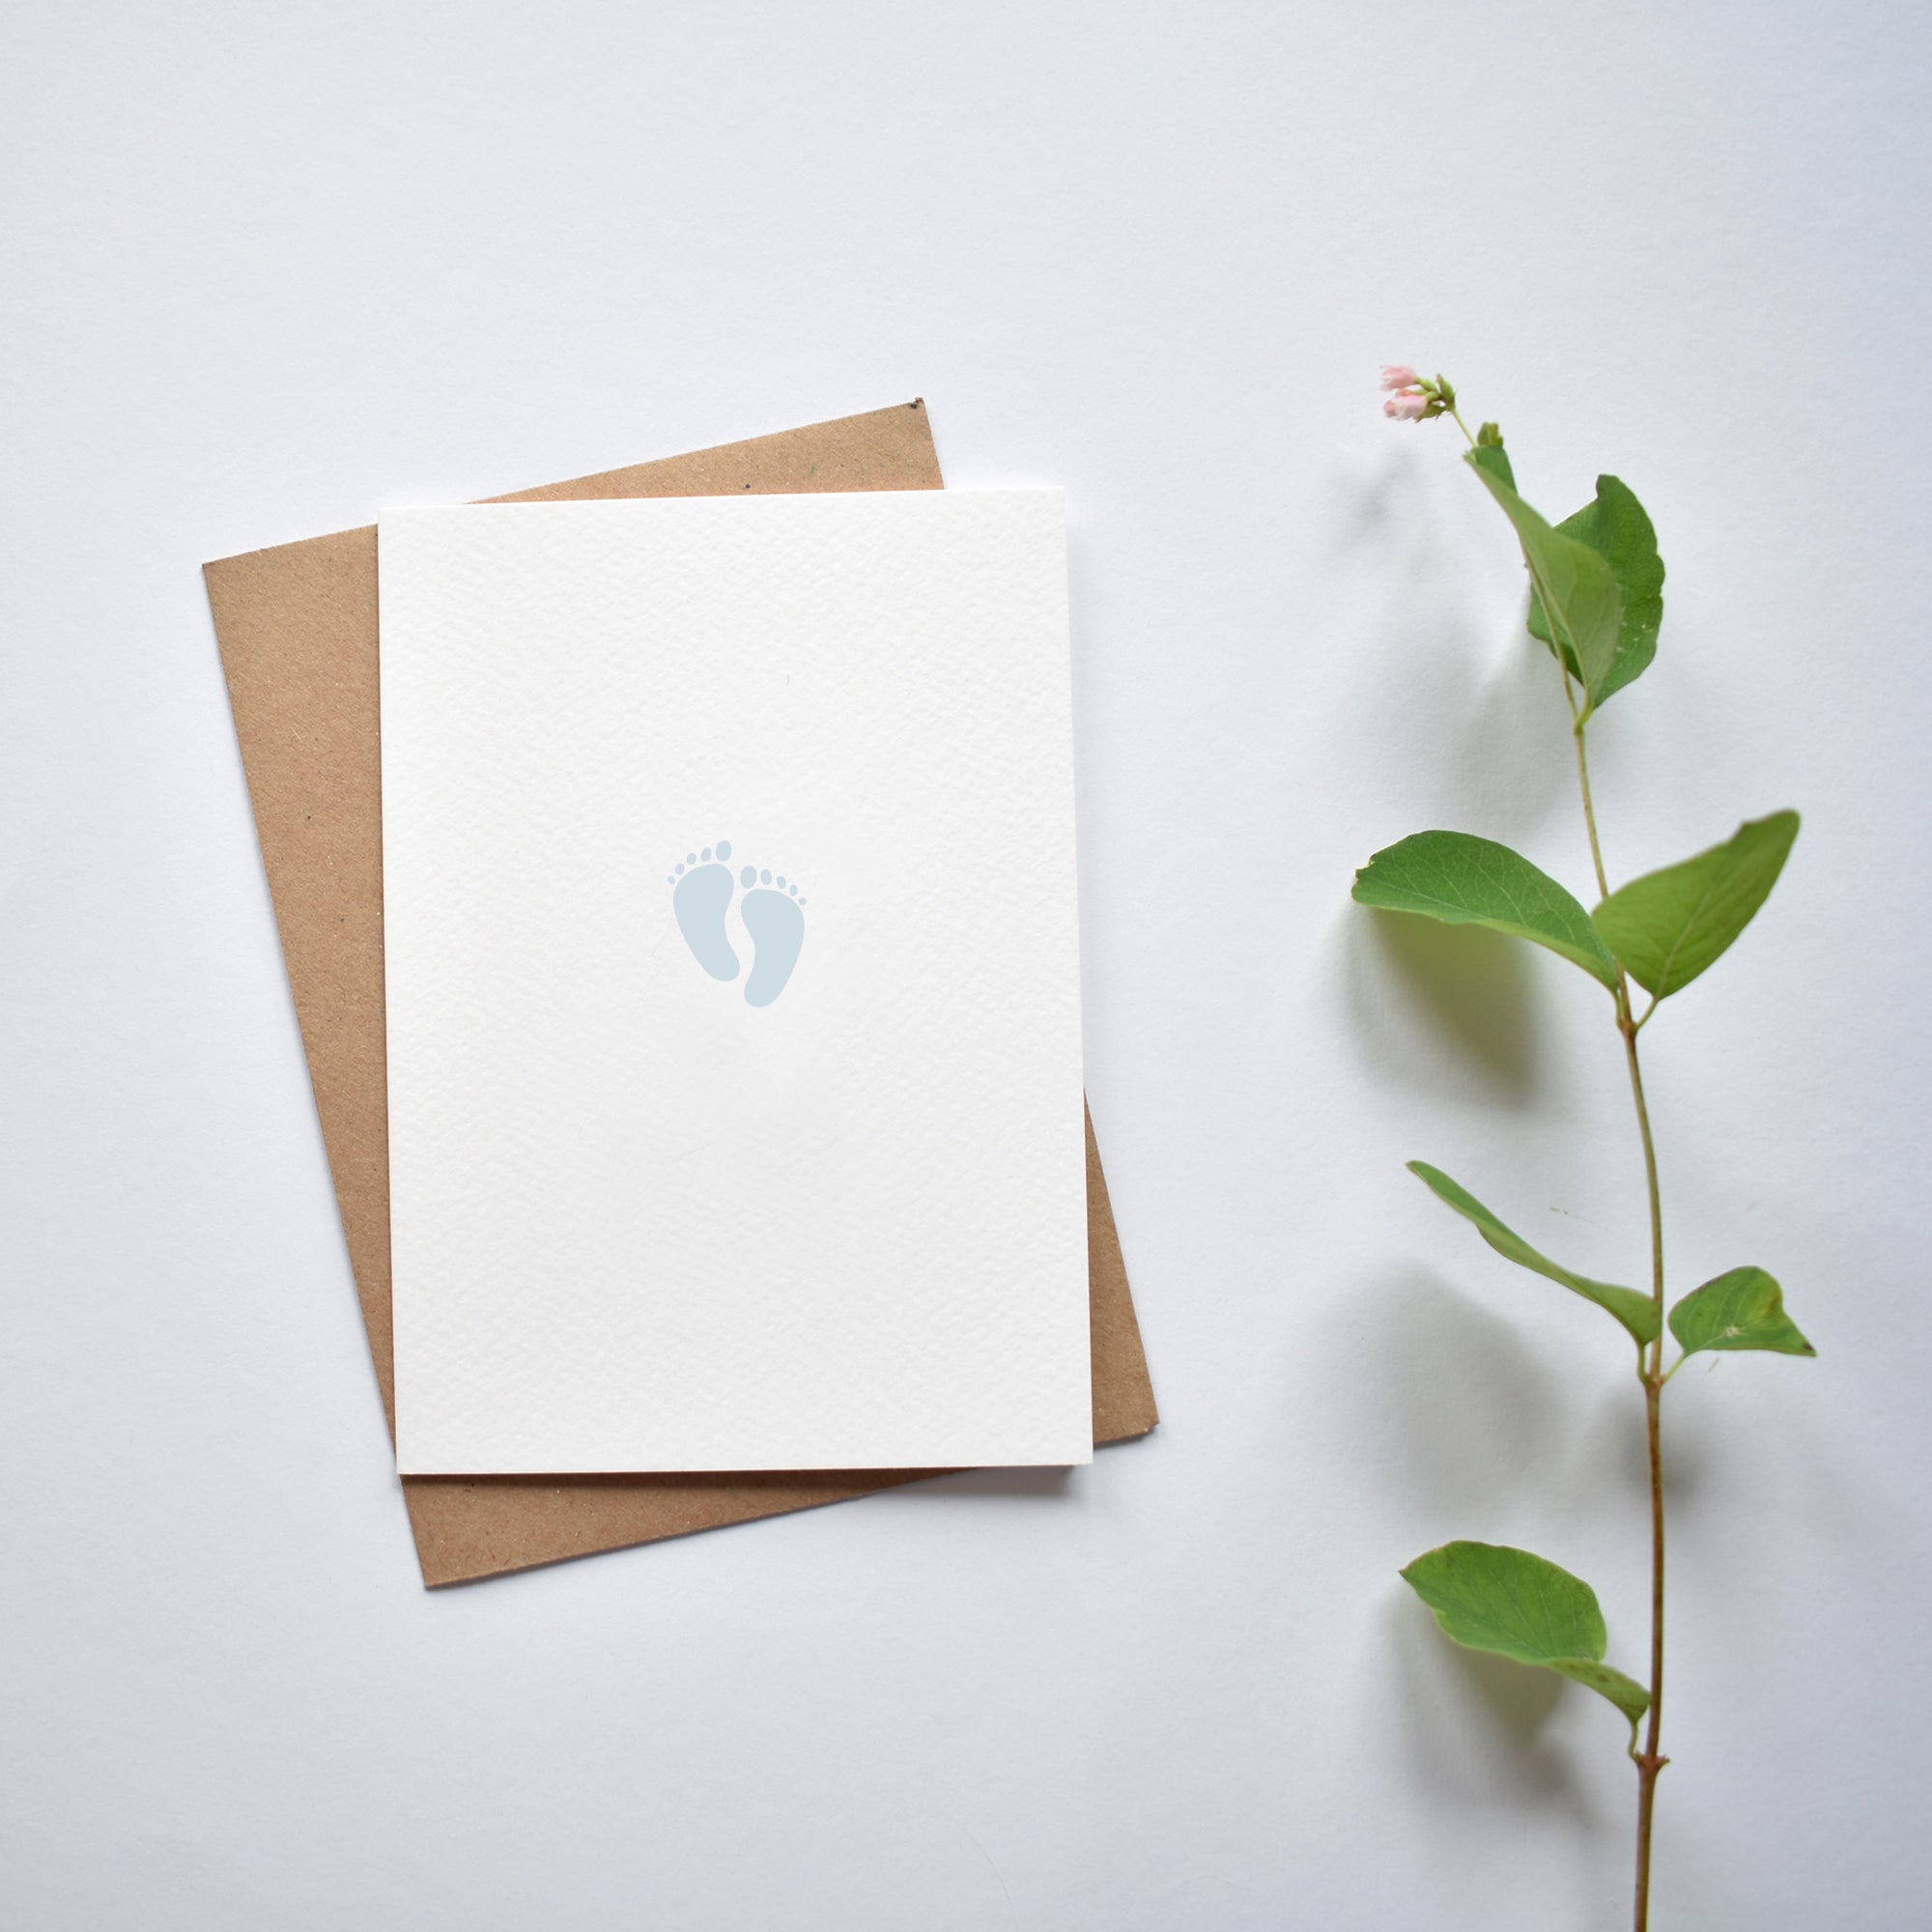 hello baby boy minimalistic greeting card elemente design